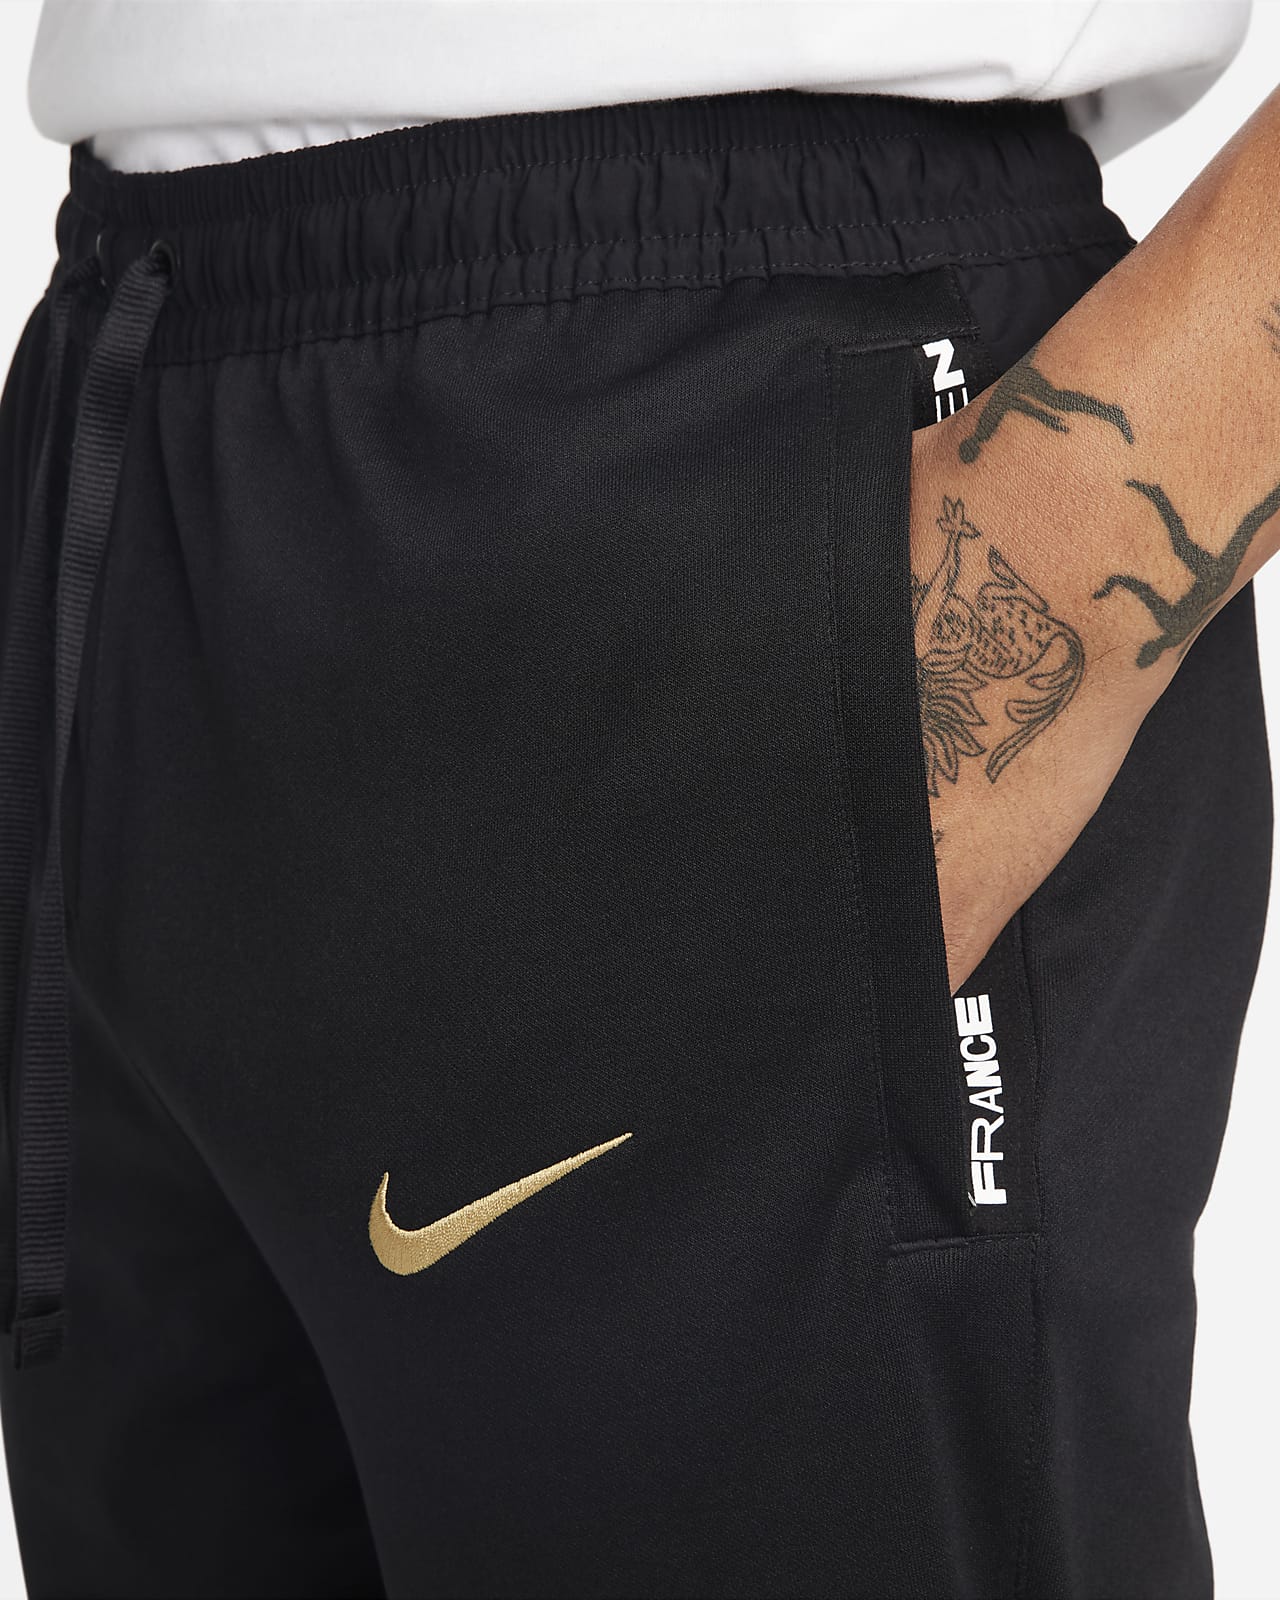 FFF Men's Knit Football Nike